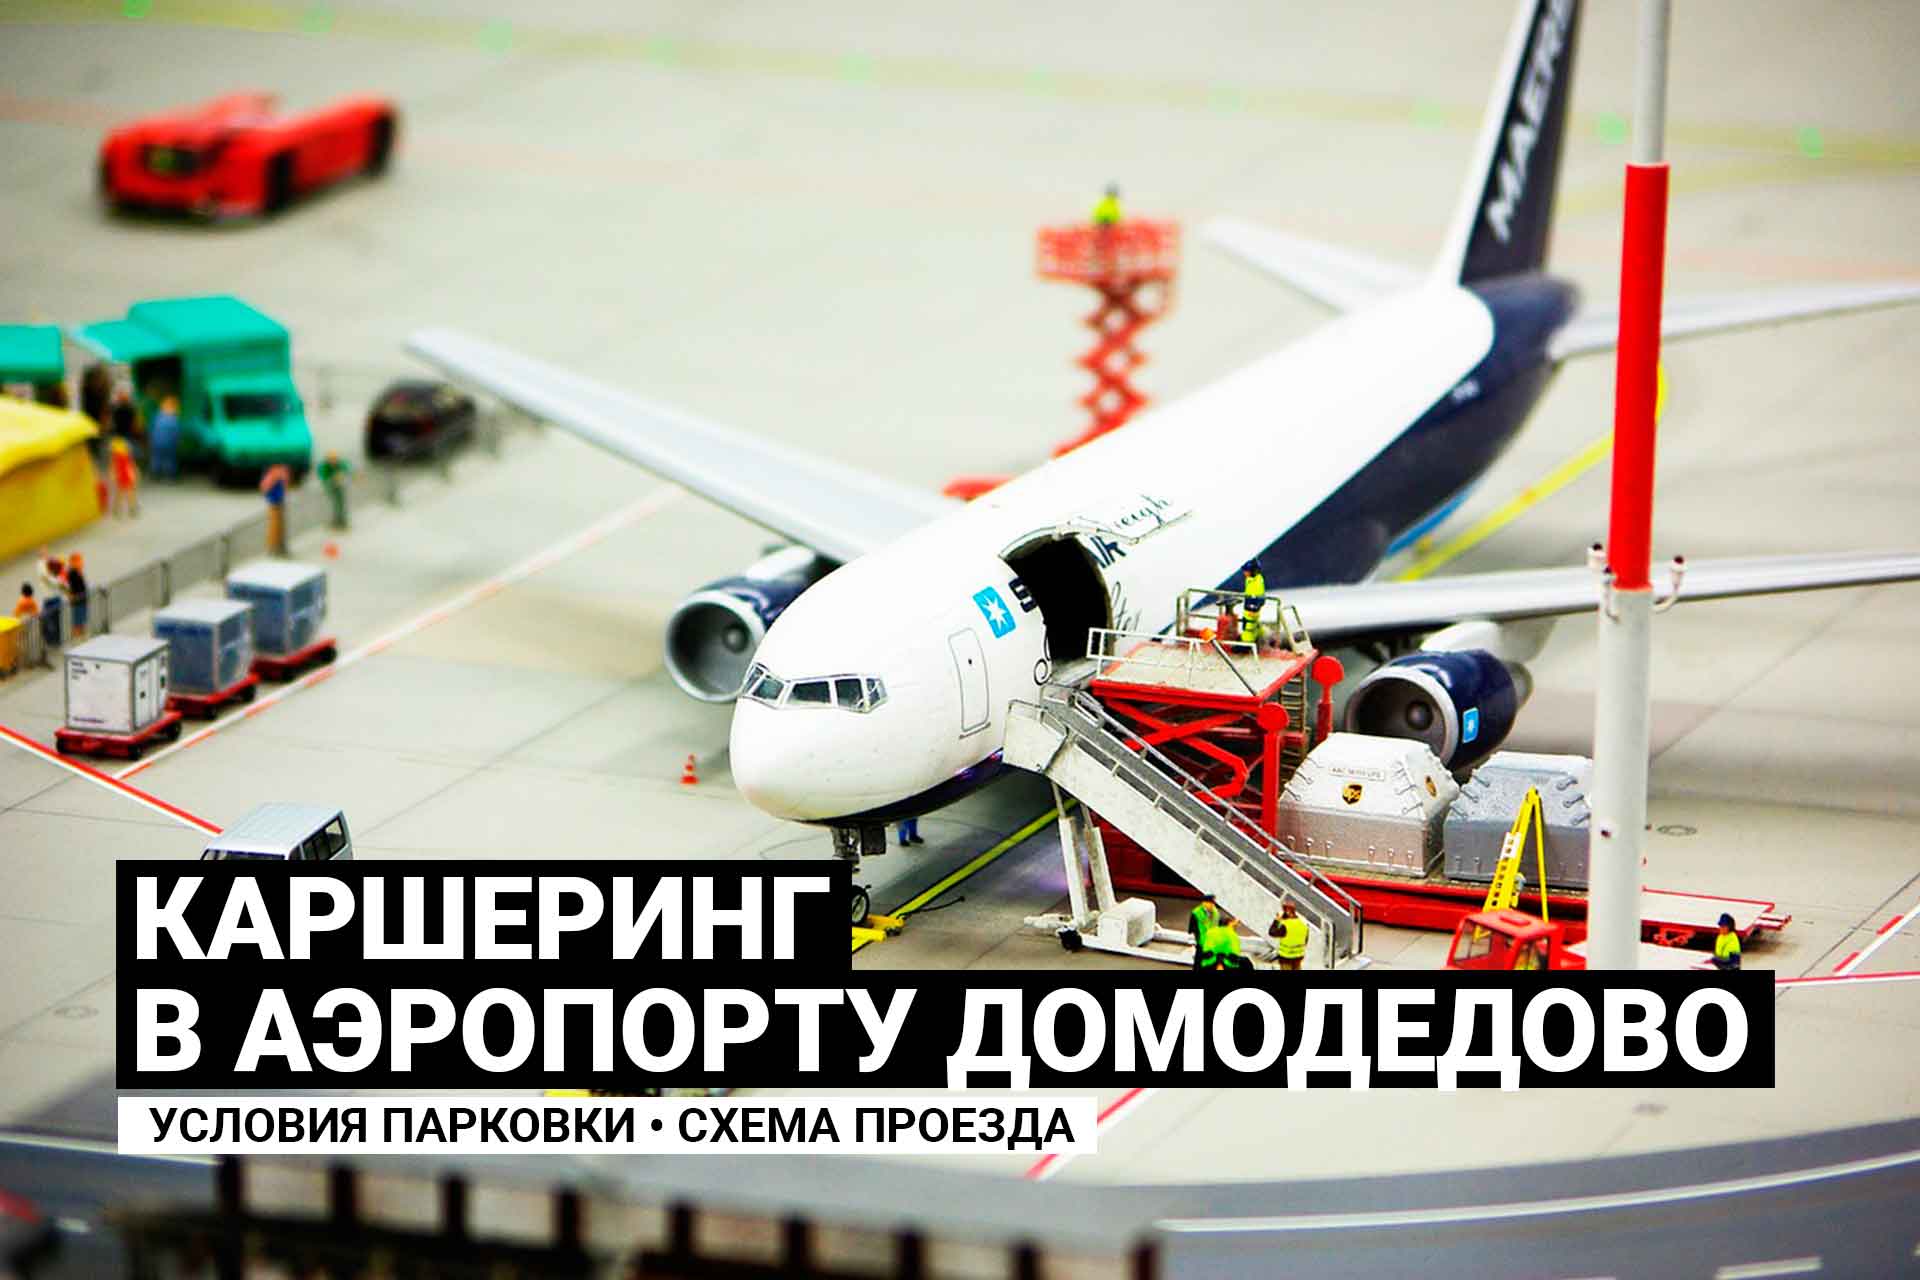 Каршеринг в аэропорту Домодедово